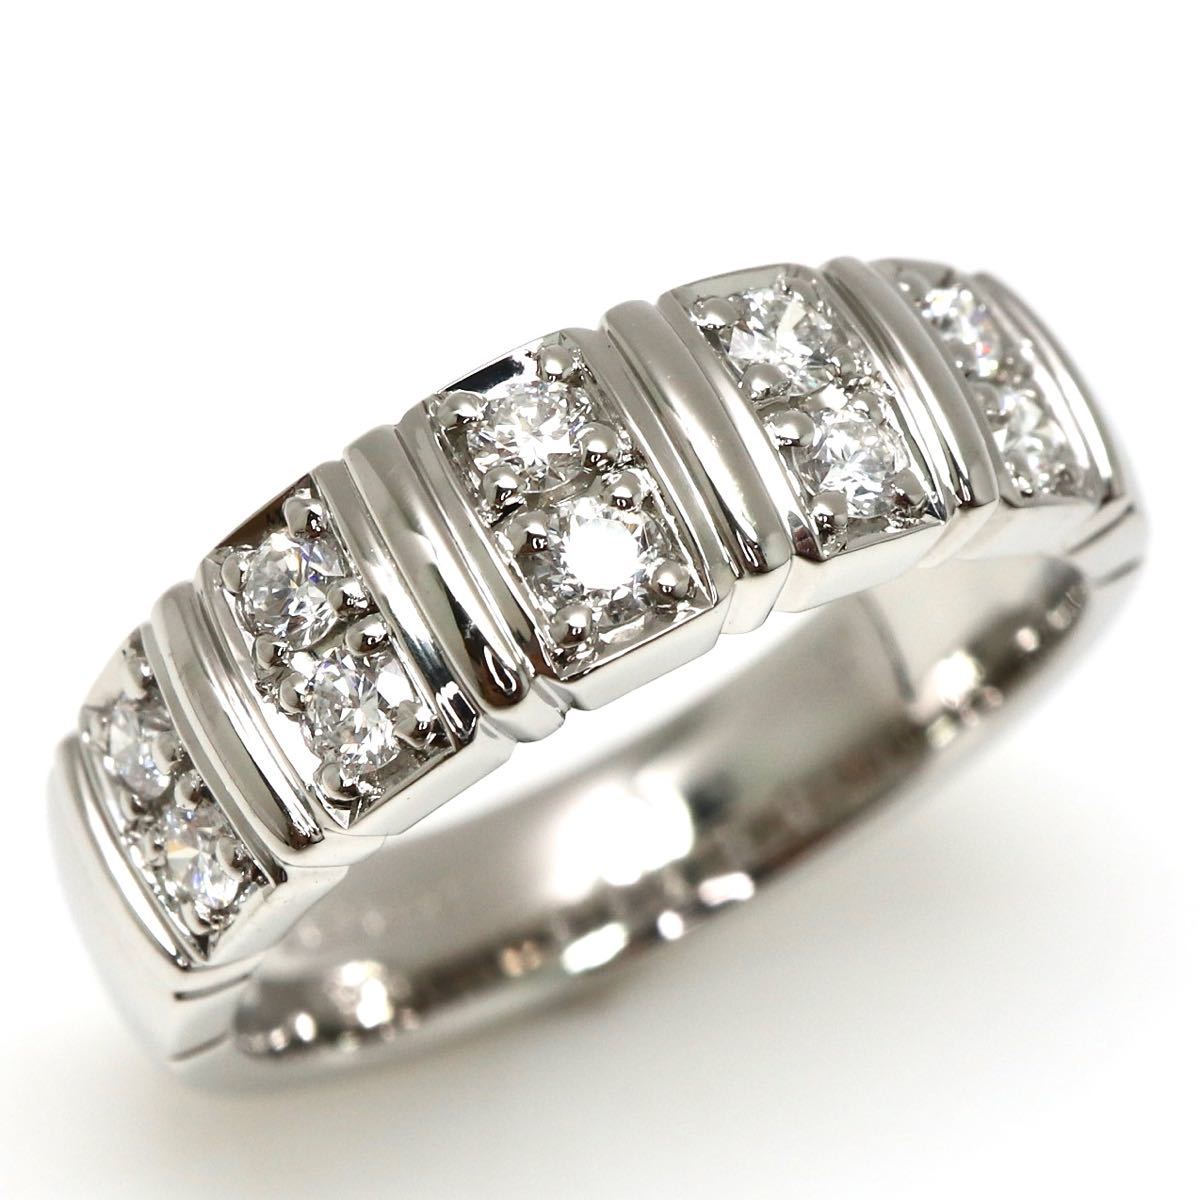 新品仕上げ済み!!Ambrose(アンブローズ)◆Pt900 天然ダイヤモンド リング◆M 7.4g 12号 0.30ct diamond ring 指輪 jewelry EC6_画像1